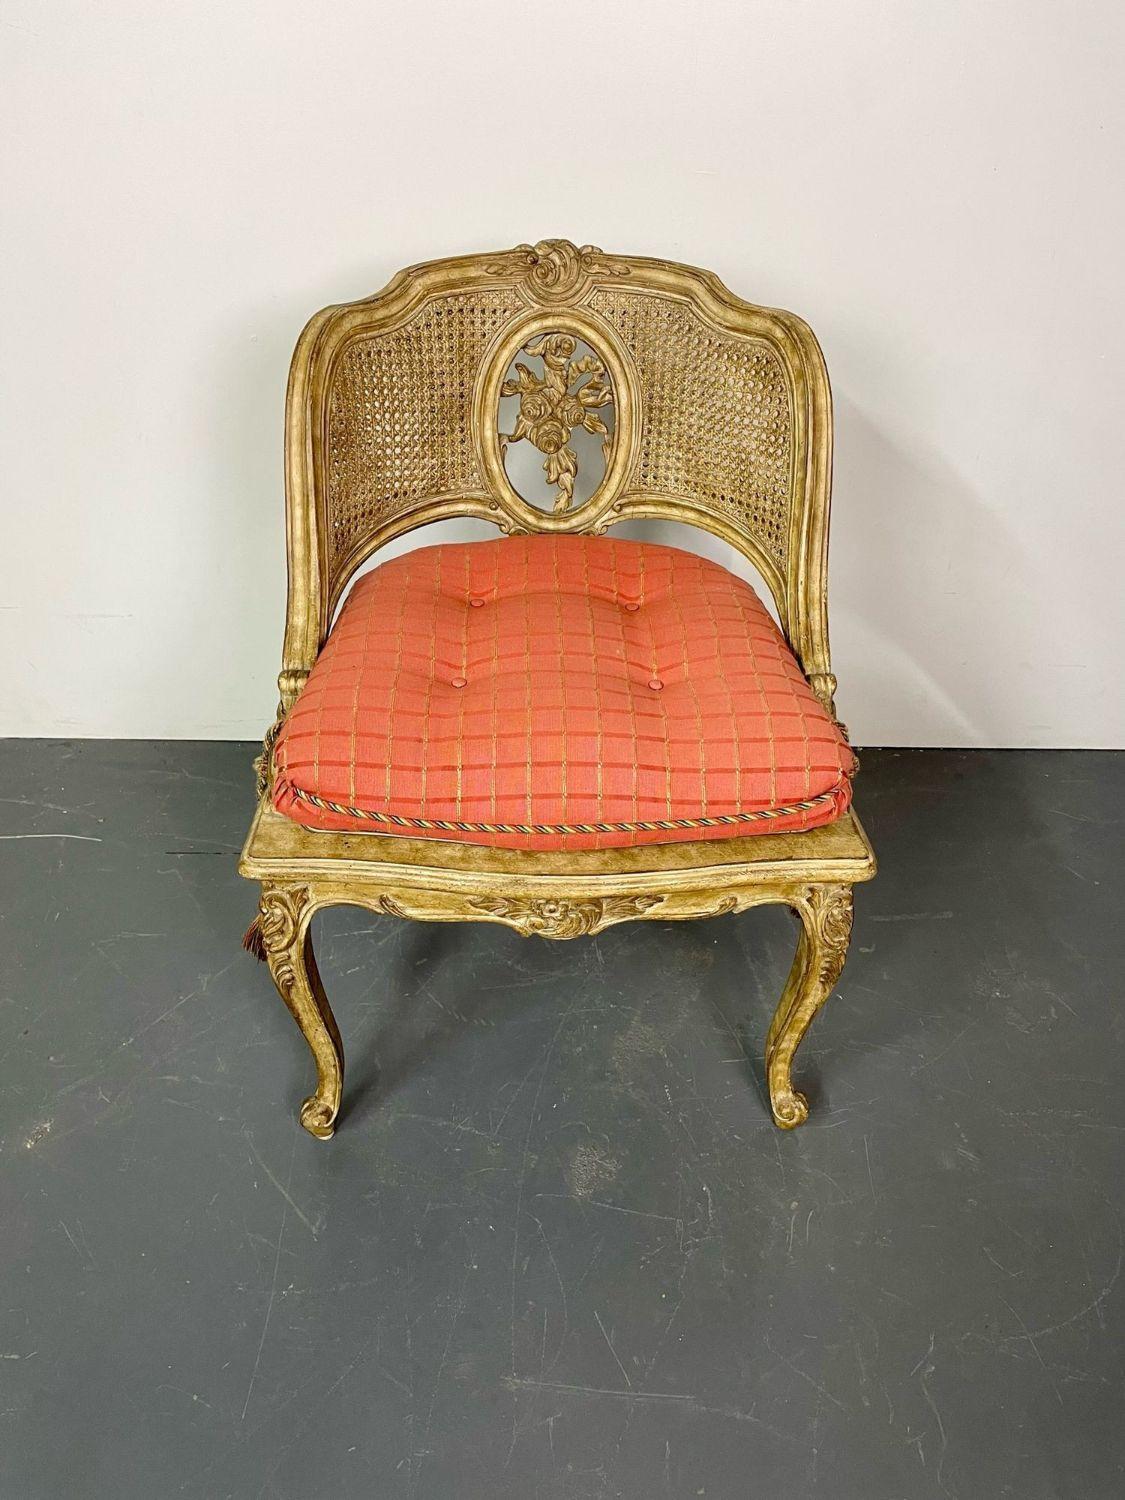 Boudoir-Stuhl im Louis XV-Stil, Eitelkeits- oder Dielenstuhl,  Tufting-Kissen und Quasten

Ein außergewöhnlicher Stuhl mit Schnitzereien und Rohrgeflecht, der sich perfekt für ein kleines Boudoir oder eine Eitelkeit oder einen Vorraum eignet. Feine